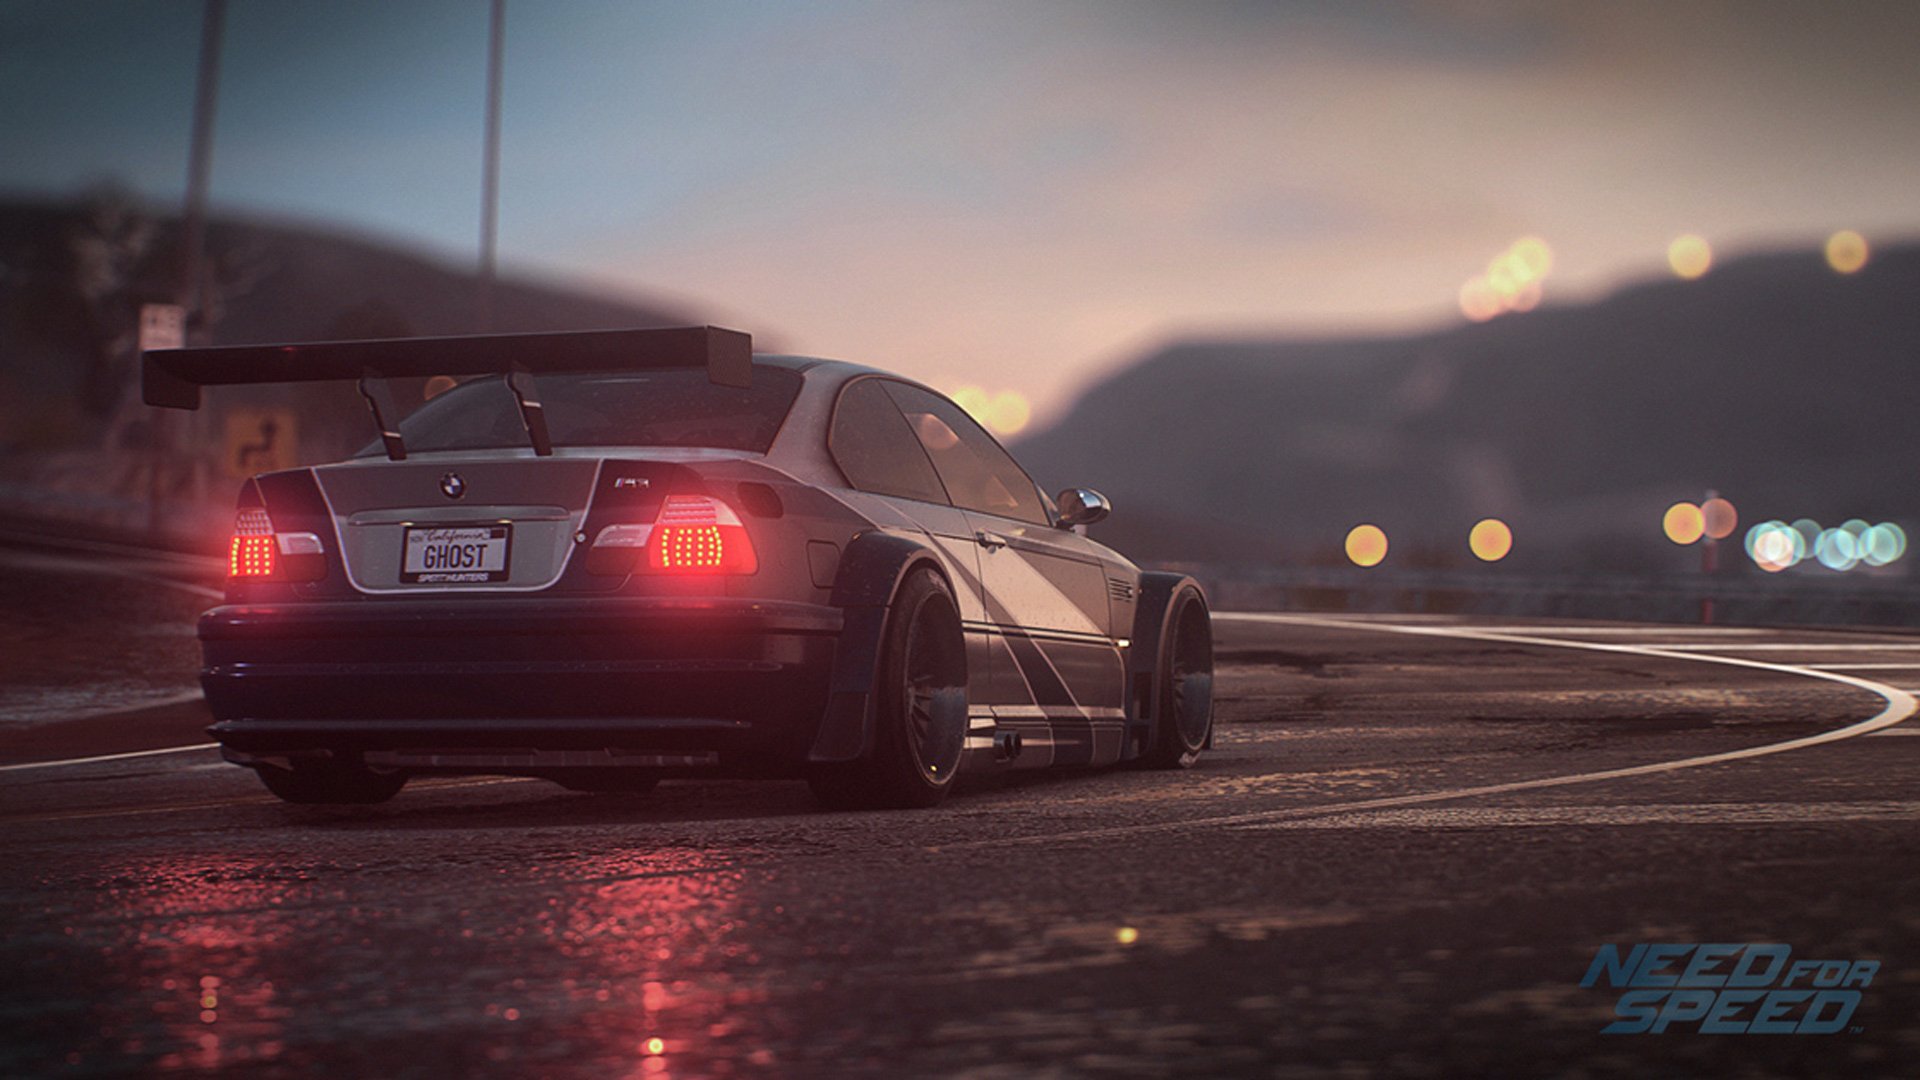 شایعه: نسخه جدید بازی Need For Speed در ماه جولای معرفی خواهد شد